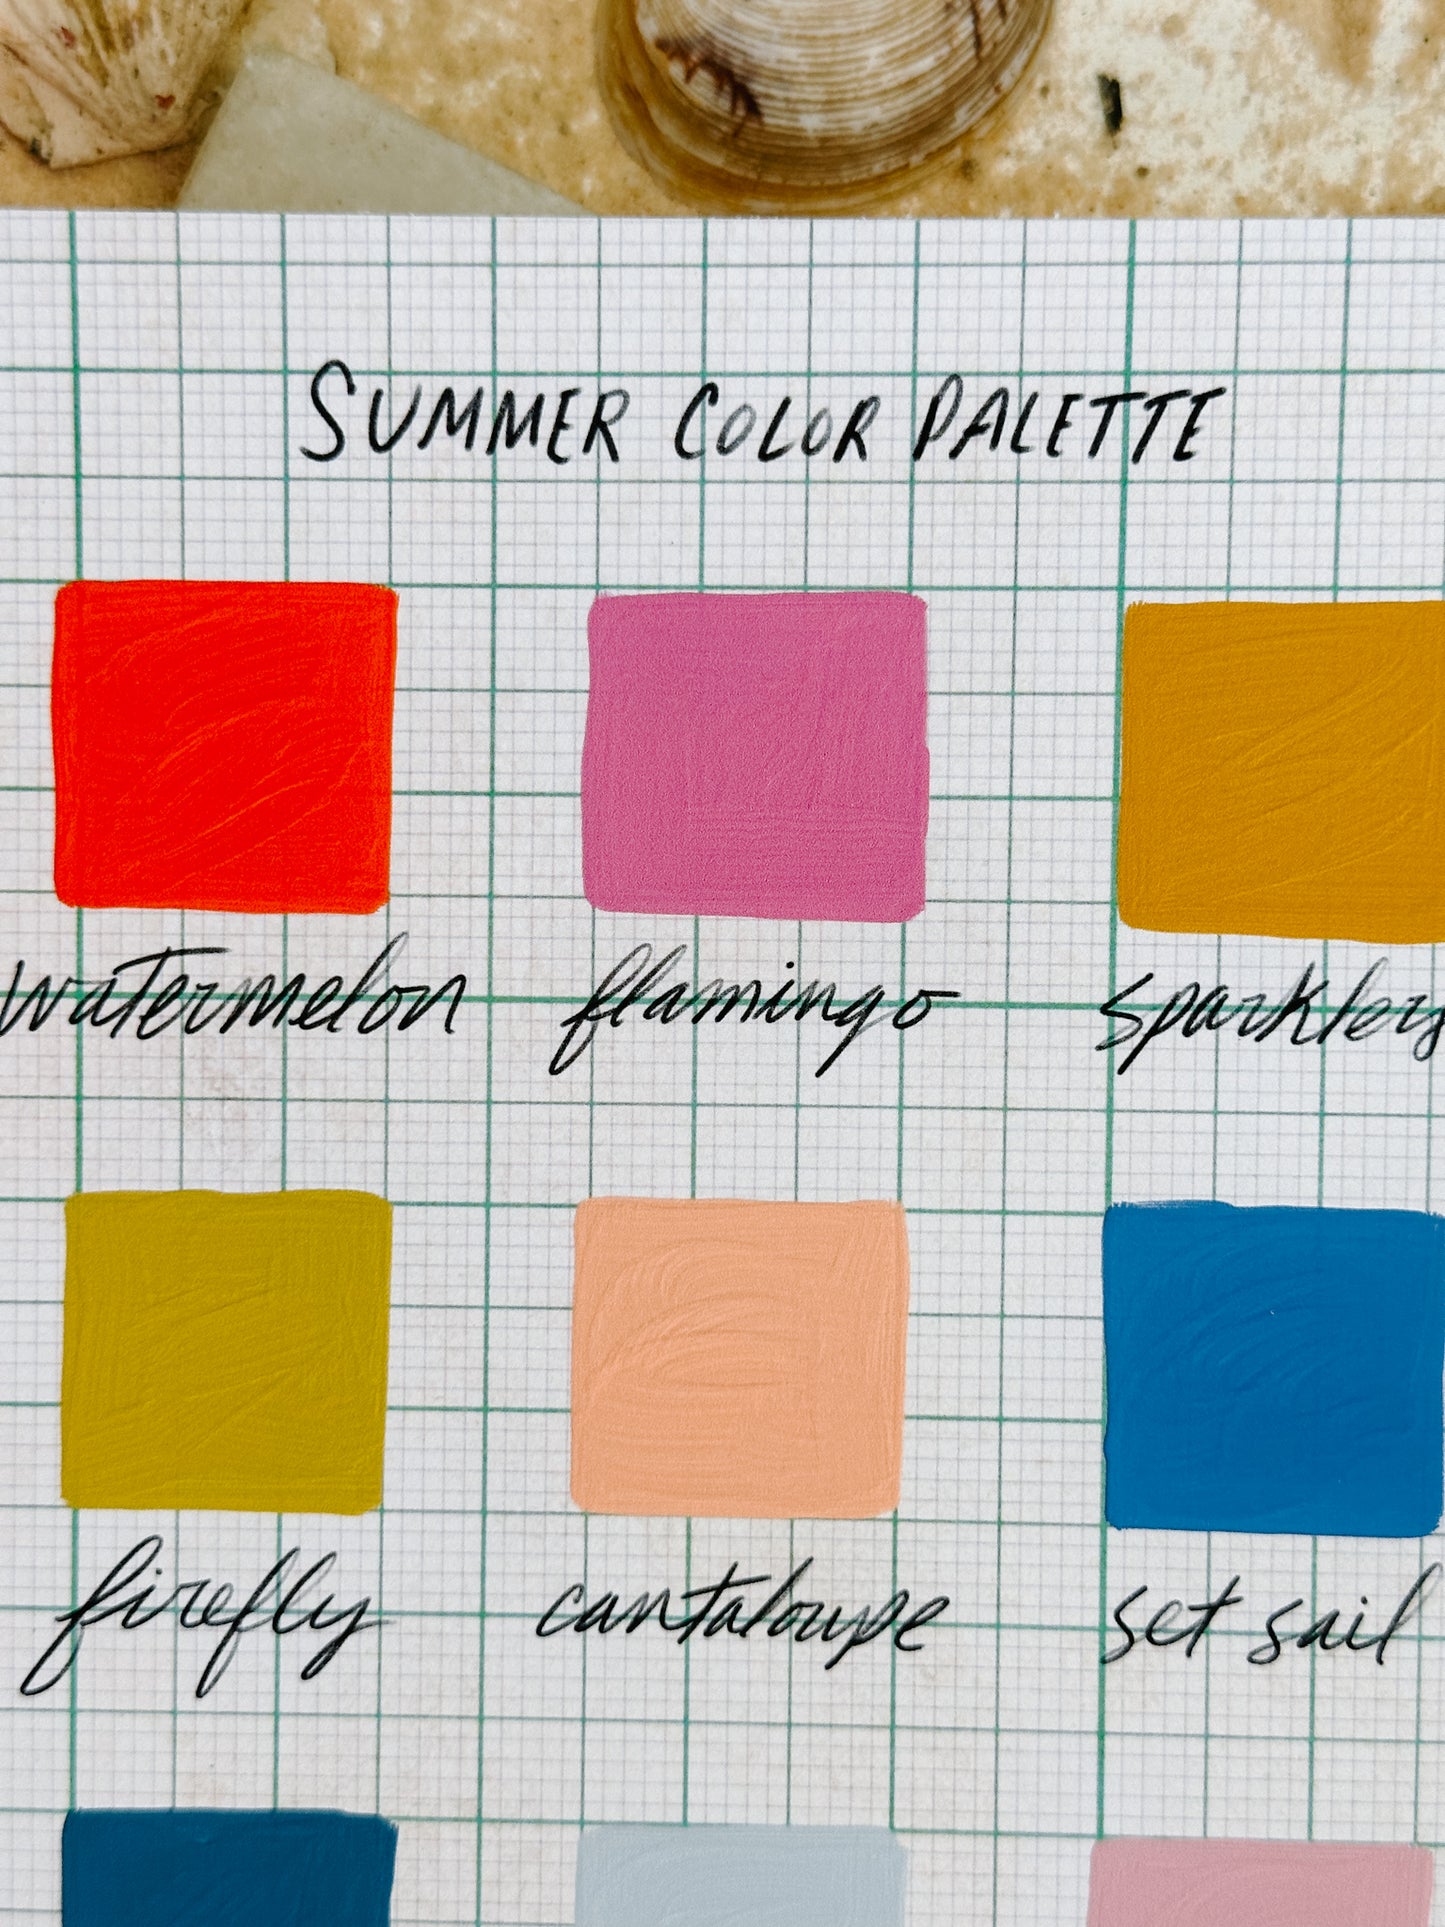 Summer Color Palette